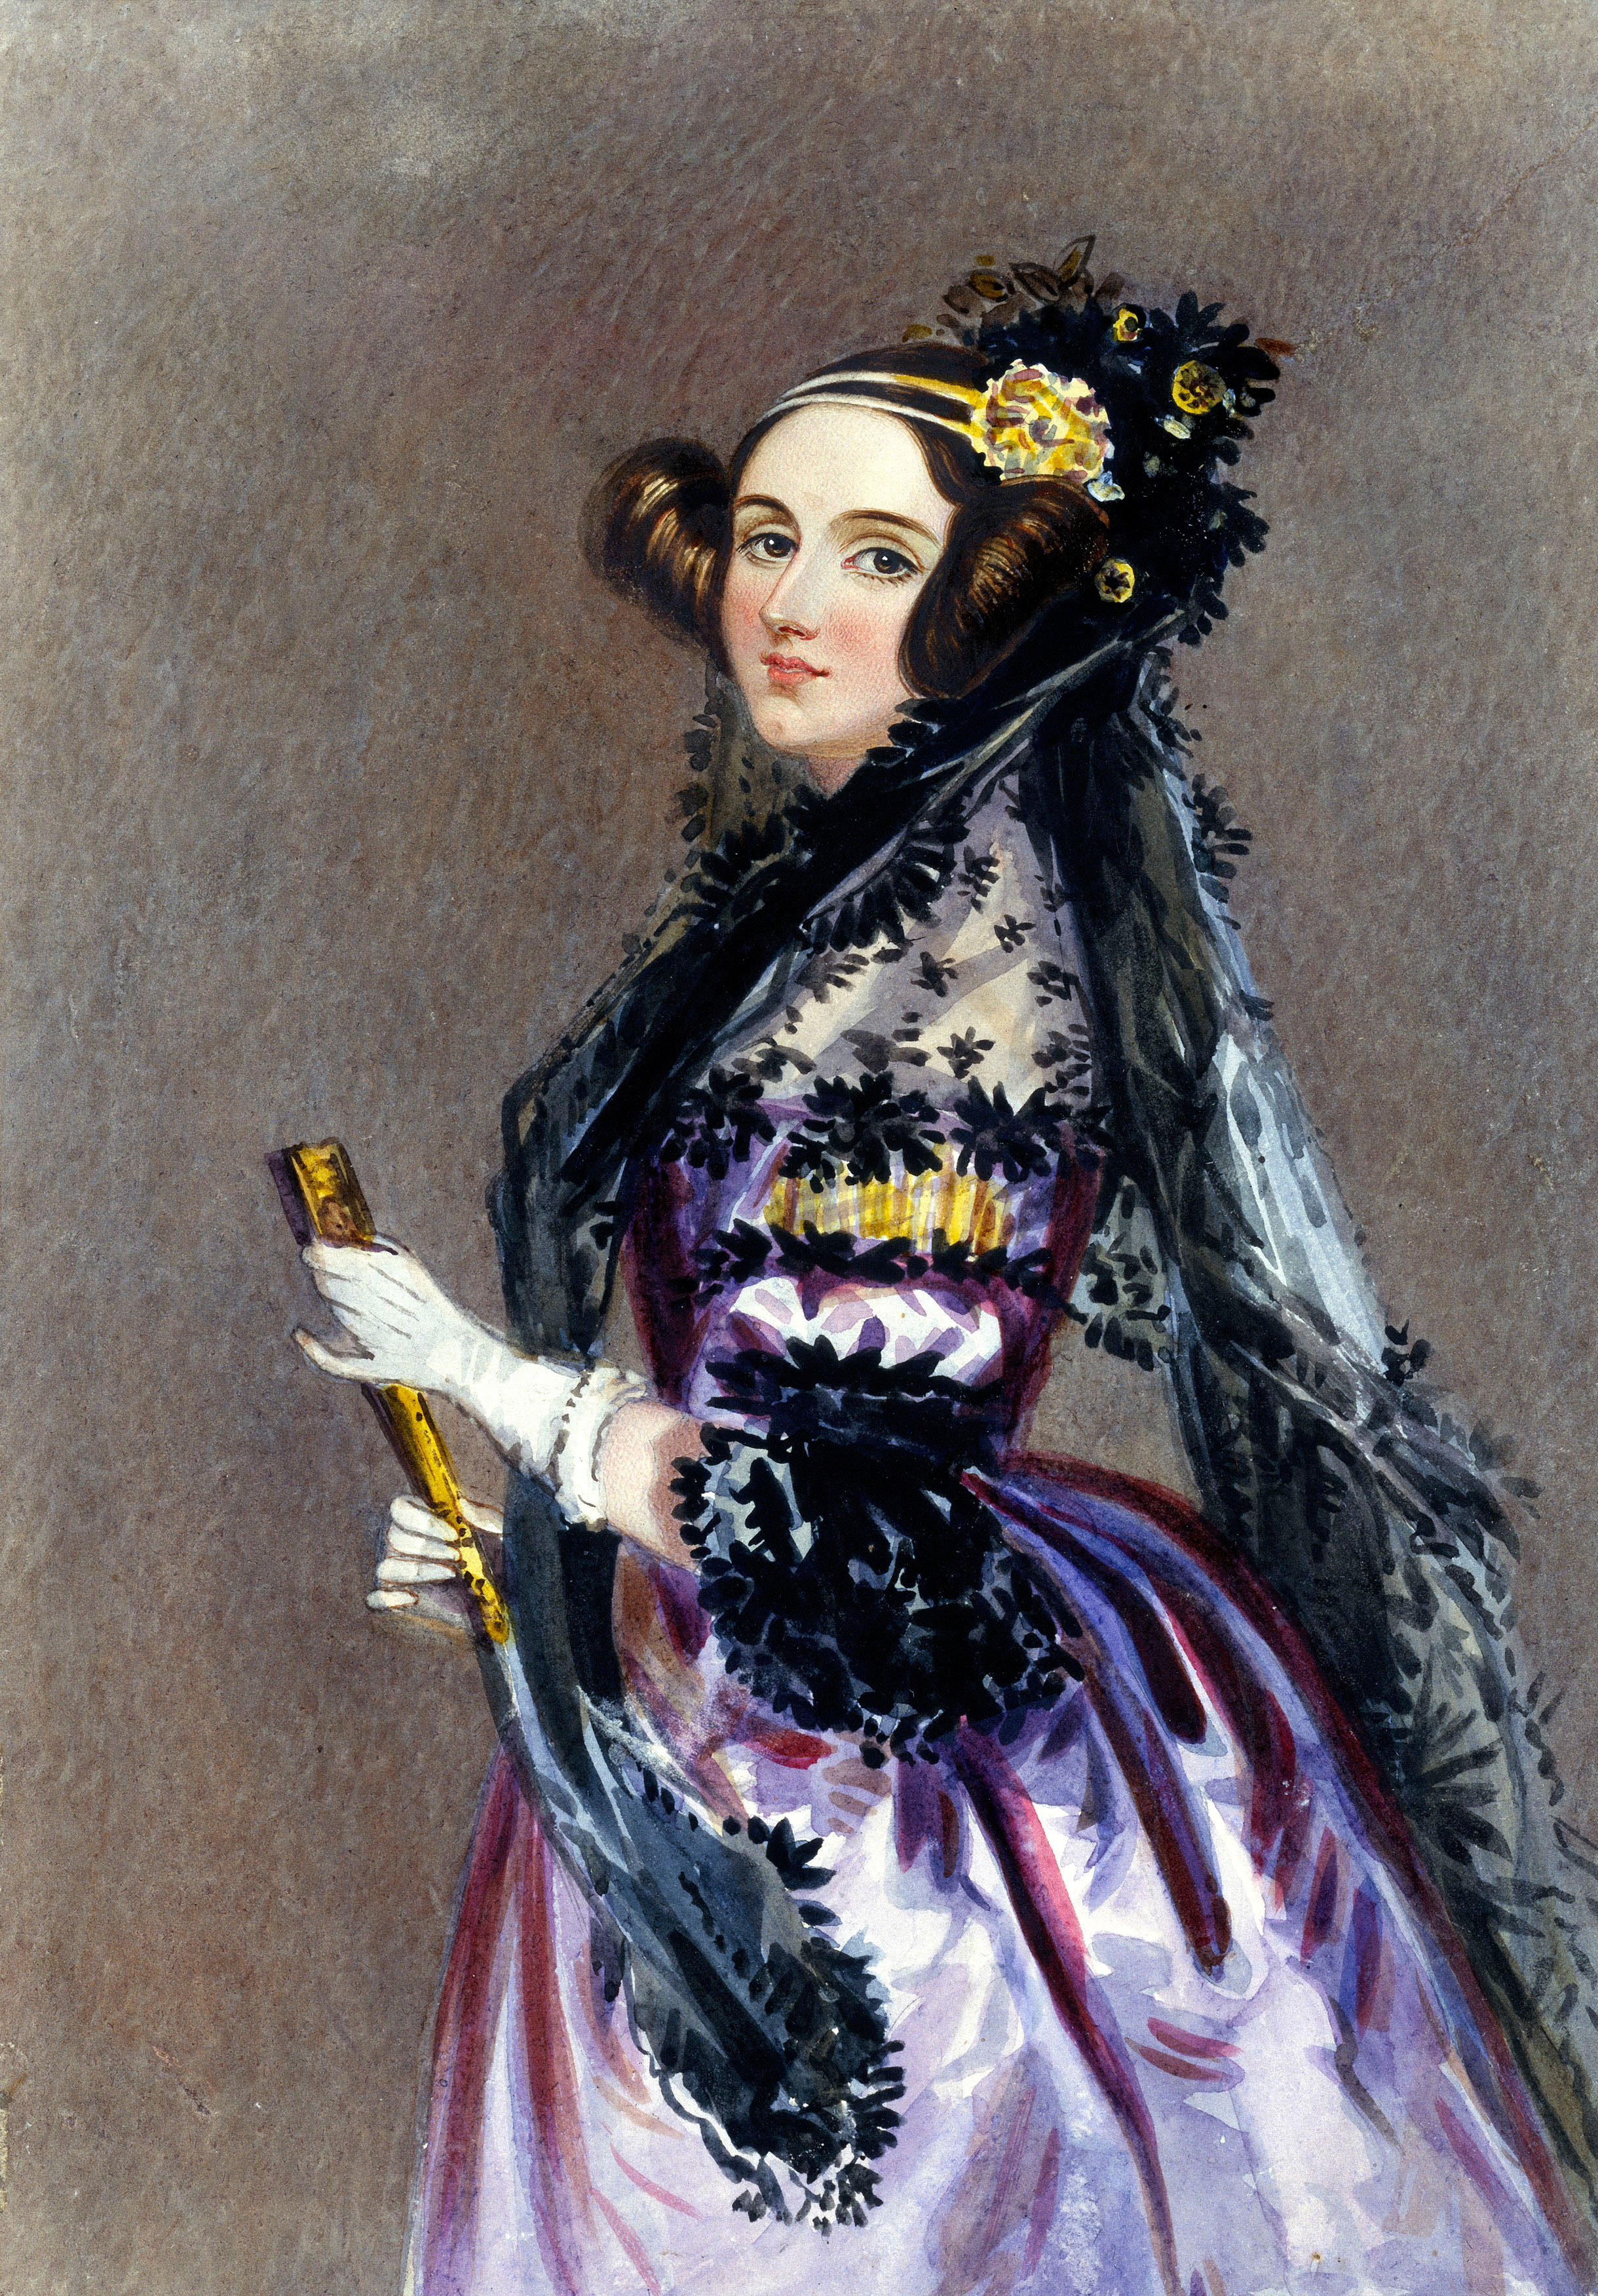 Ada Lovelace - Wikipedia